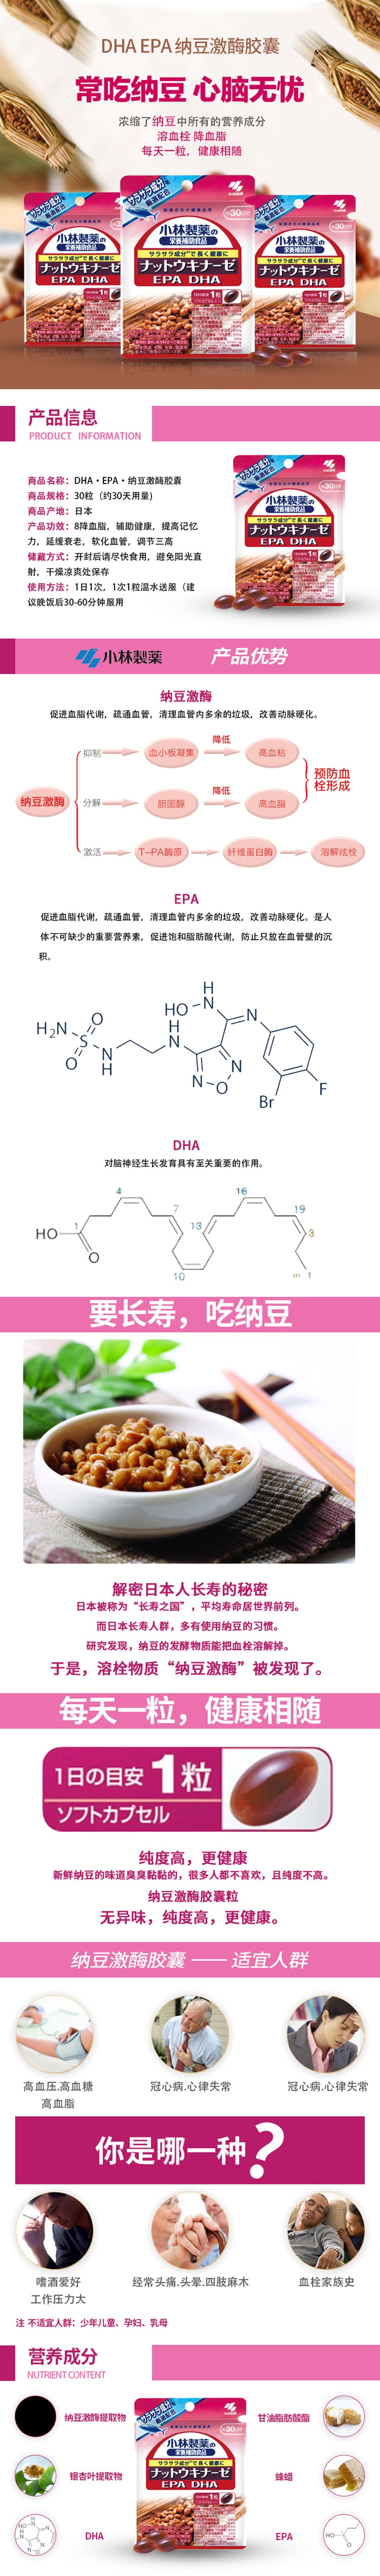 【日本直郵 】小林製藥 納豆激酶+DHA EPA 30粒30日 1袋體驗裝